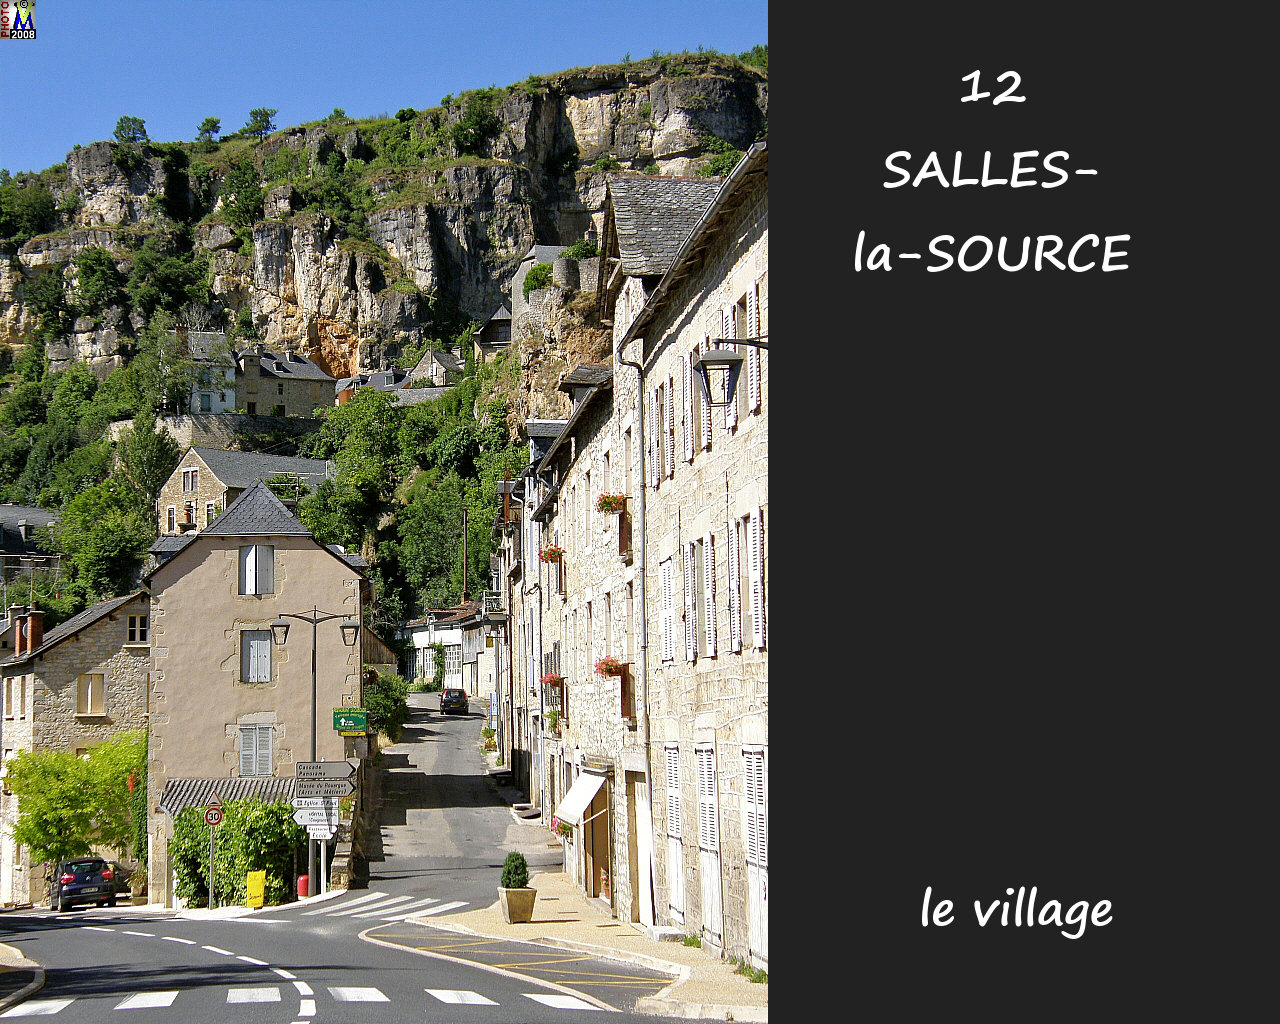 12SALLES-SOURCE_village_110.jpg